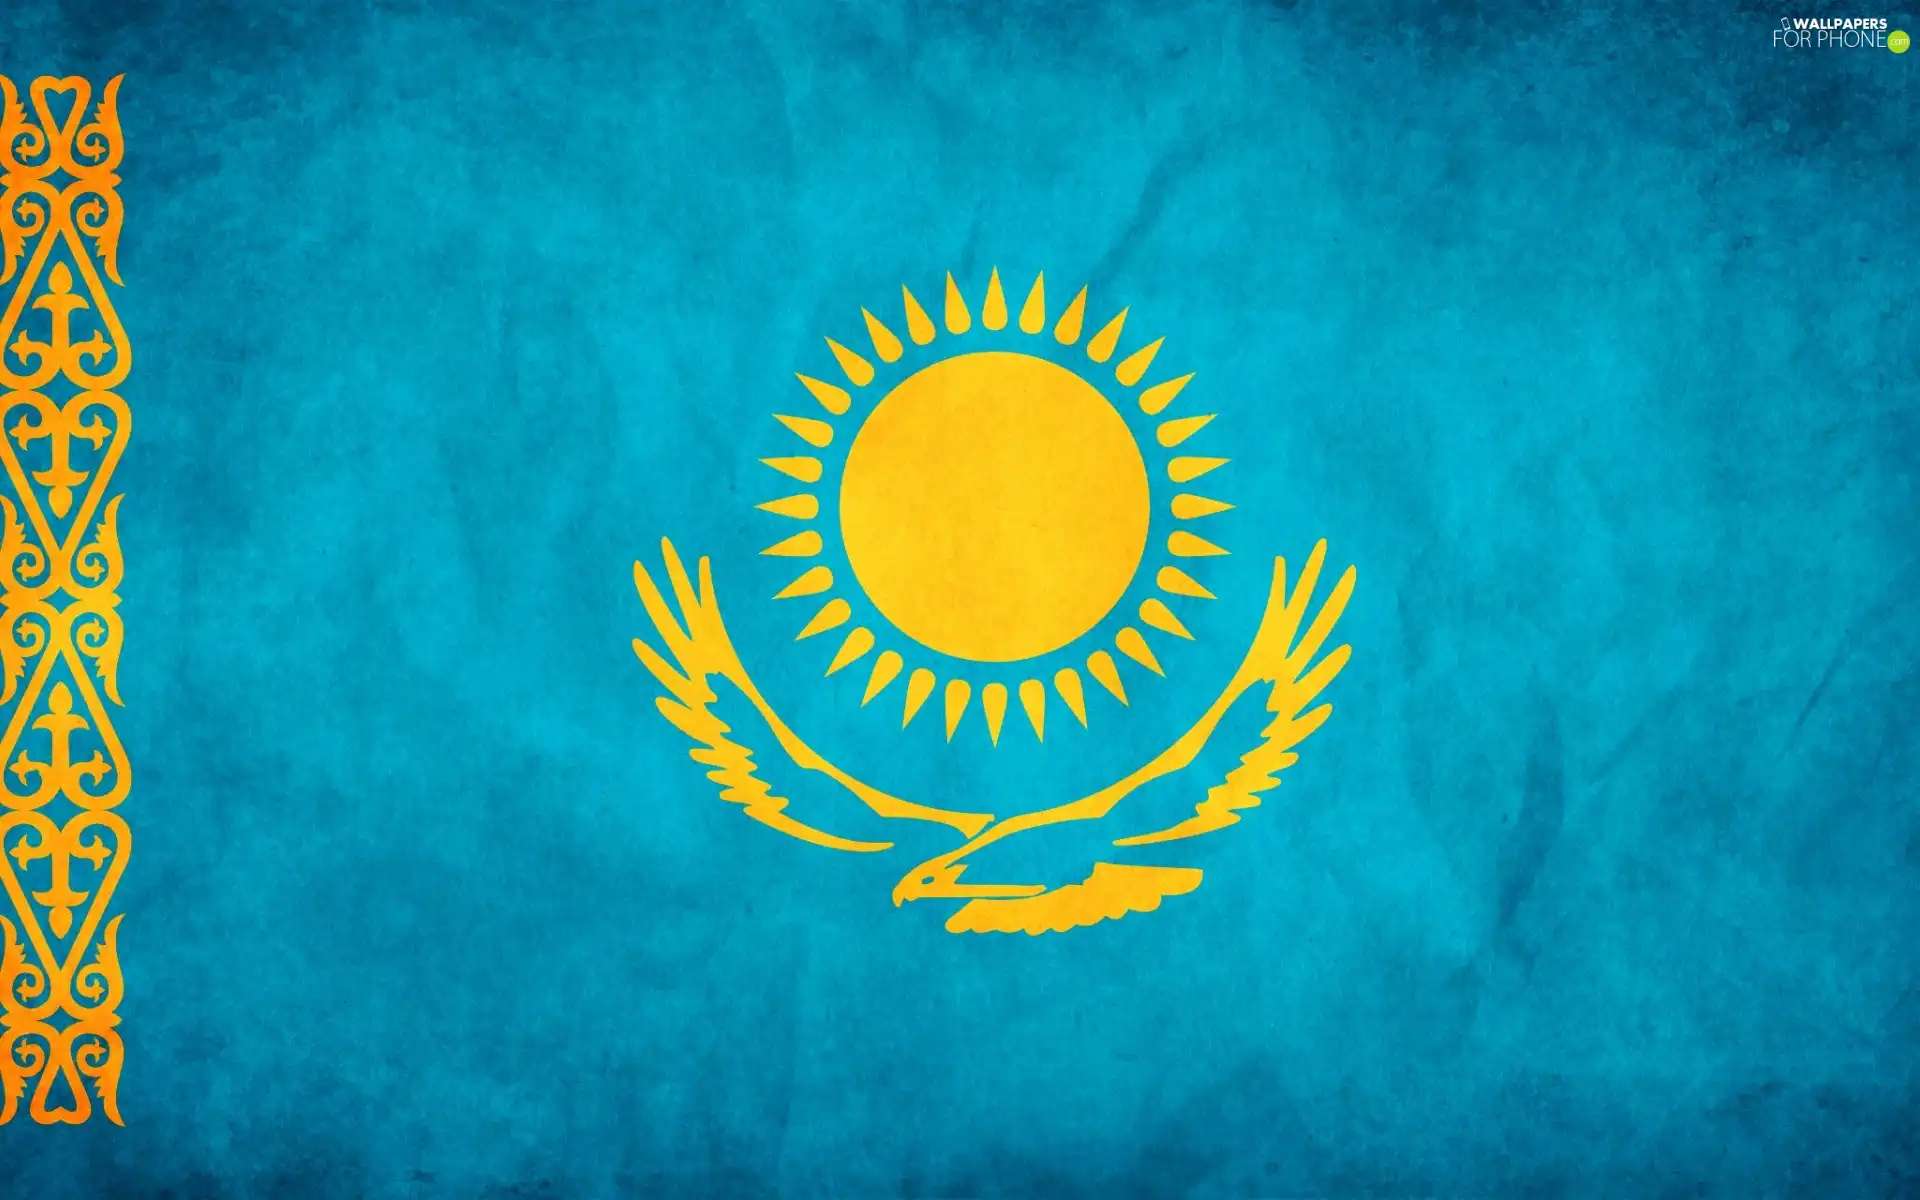 Kazakhstan, flag, Member